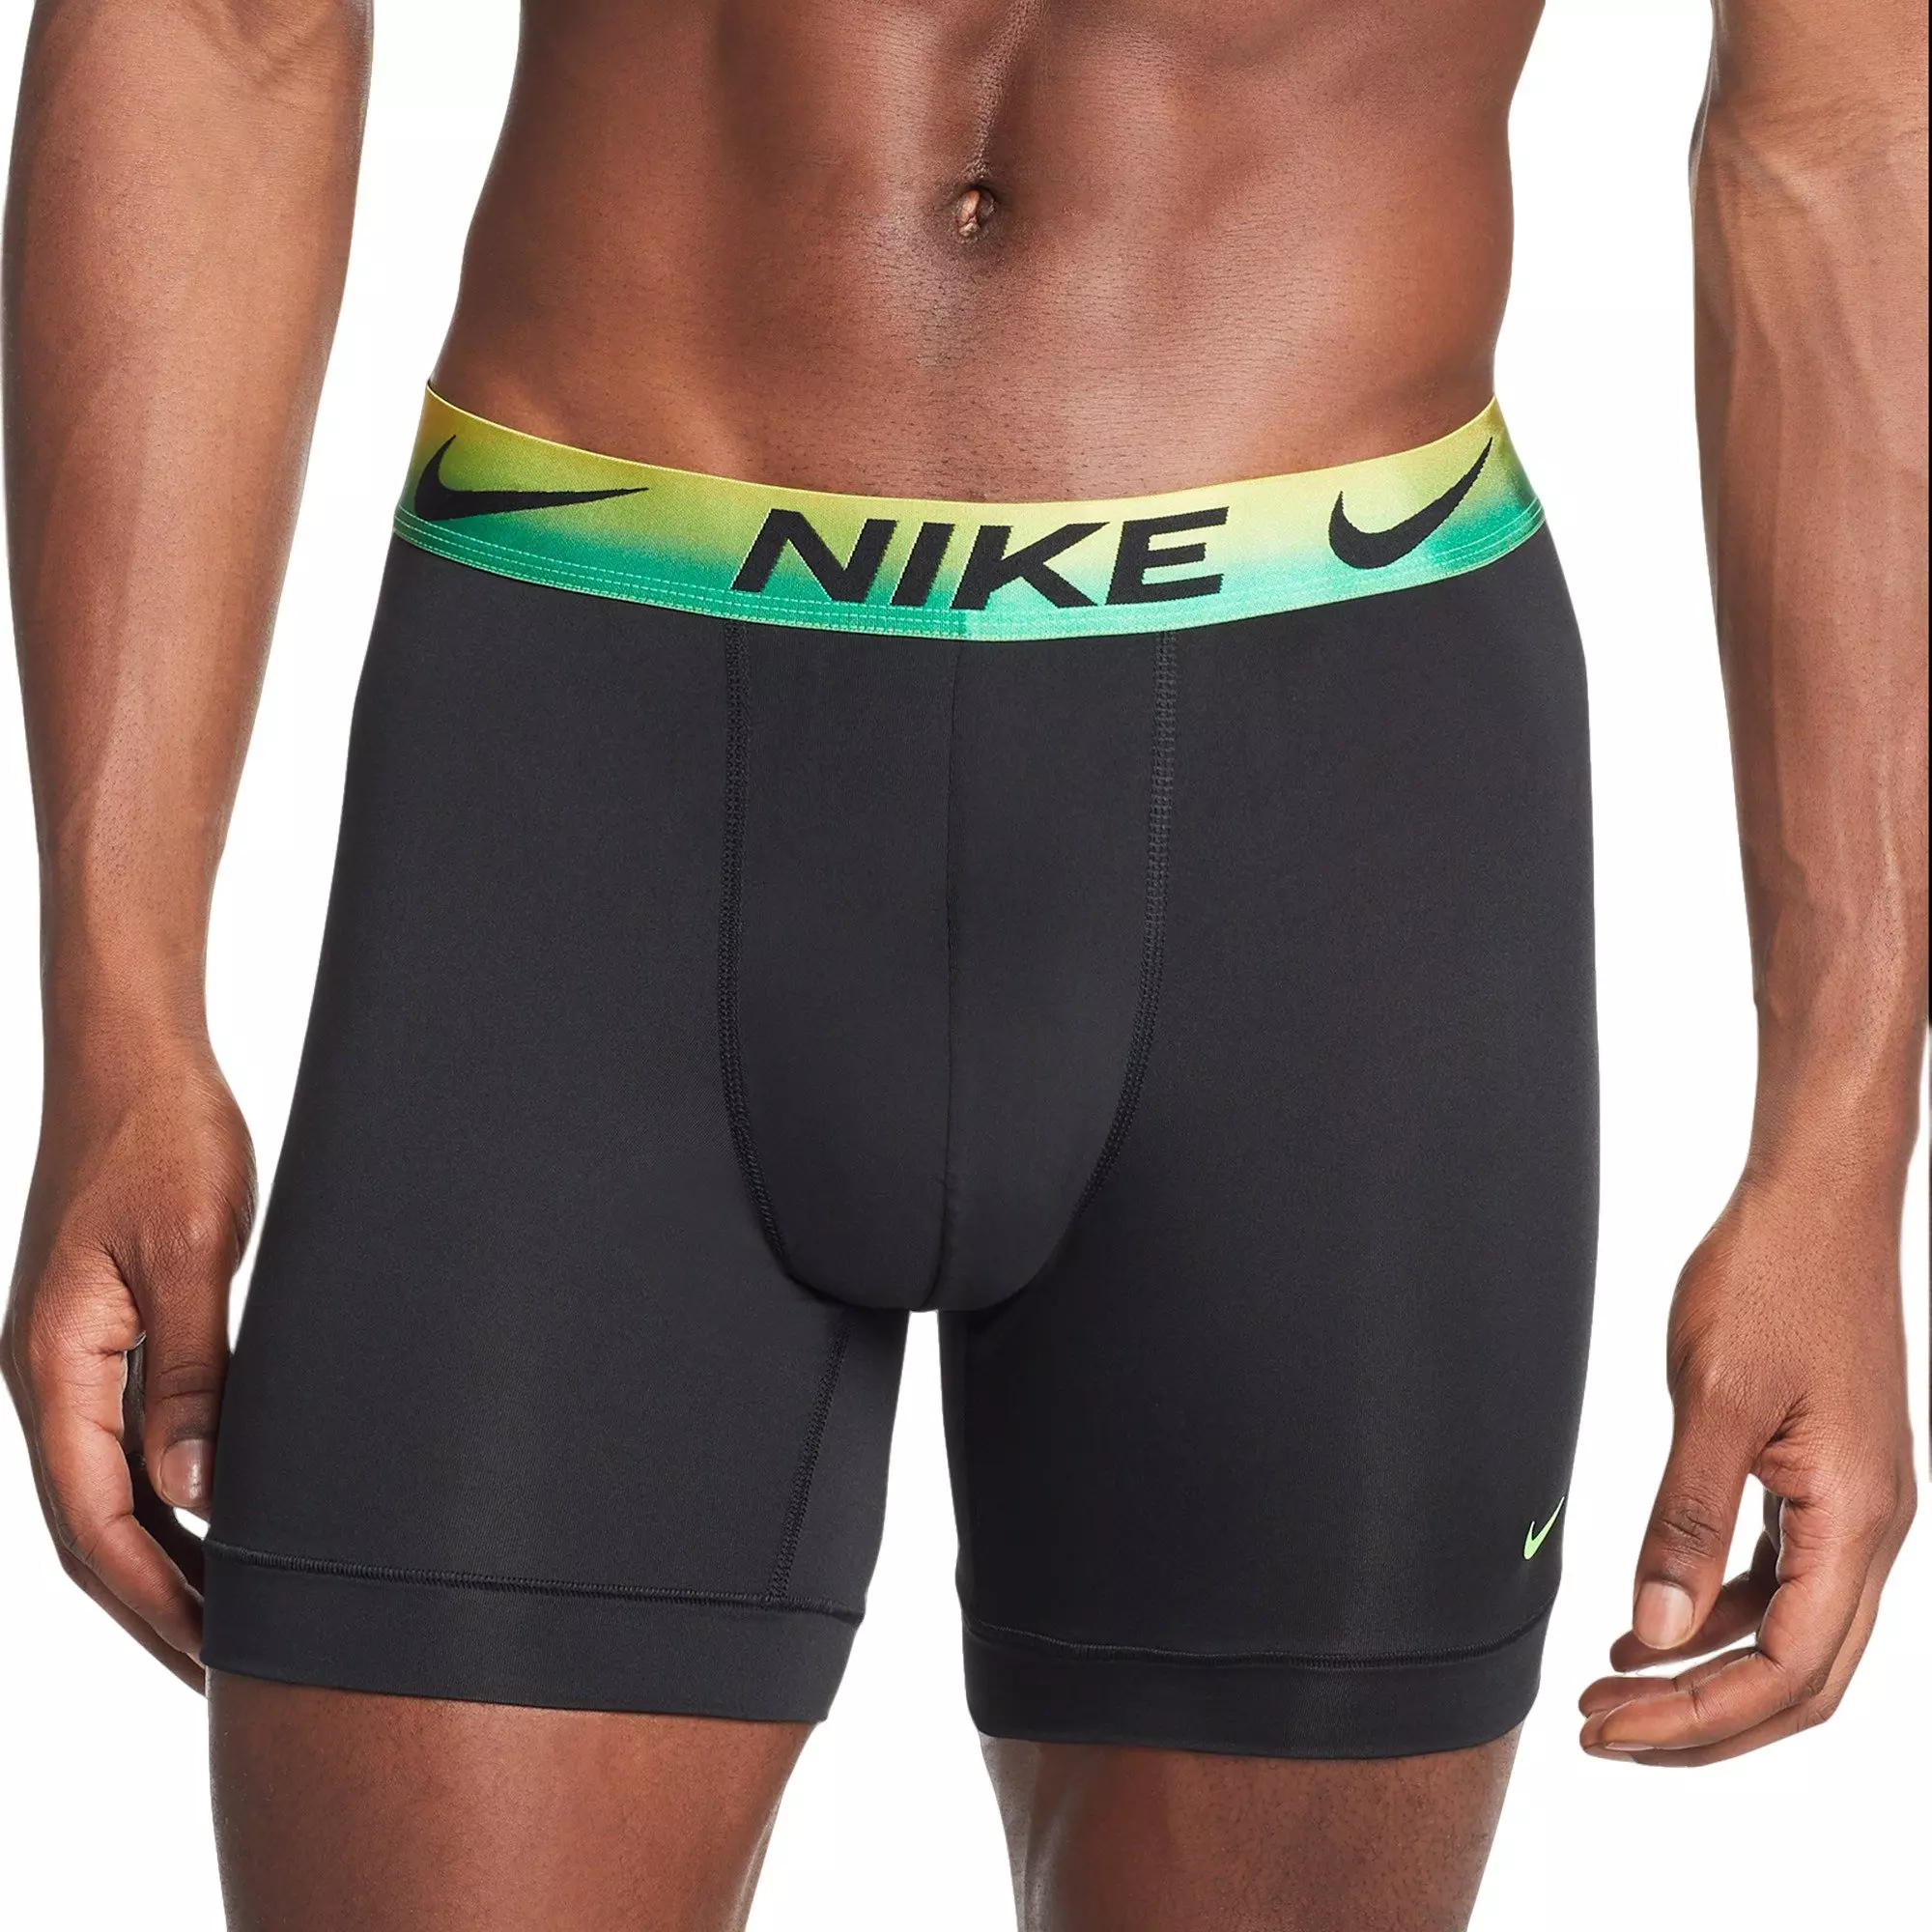 Nike Men's Underwear, Boxerbriefs & Compression Shorts - Hibbett